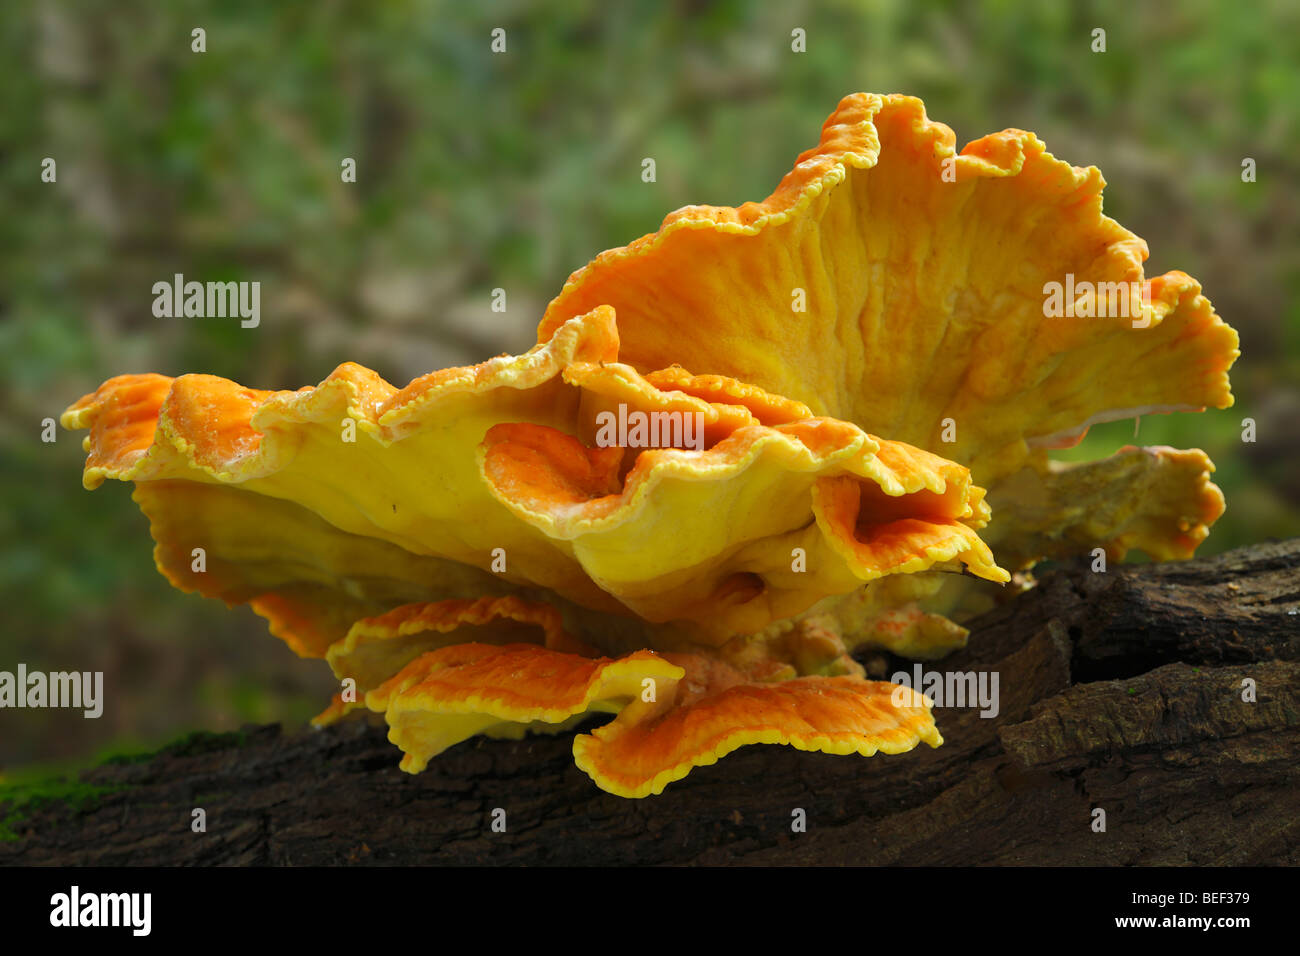 Laetiporus Sulphureus Pilze auf Eiche gefunden. Gemeinsamer Name, Huhn des Waldes. Sevenoaks Wildlife Reserve, Kent, England, UK. Stockfoto